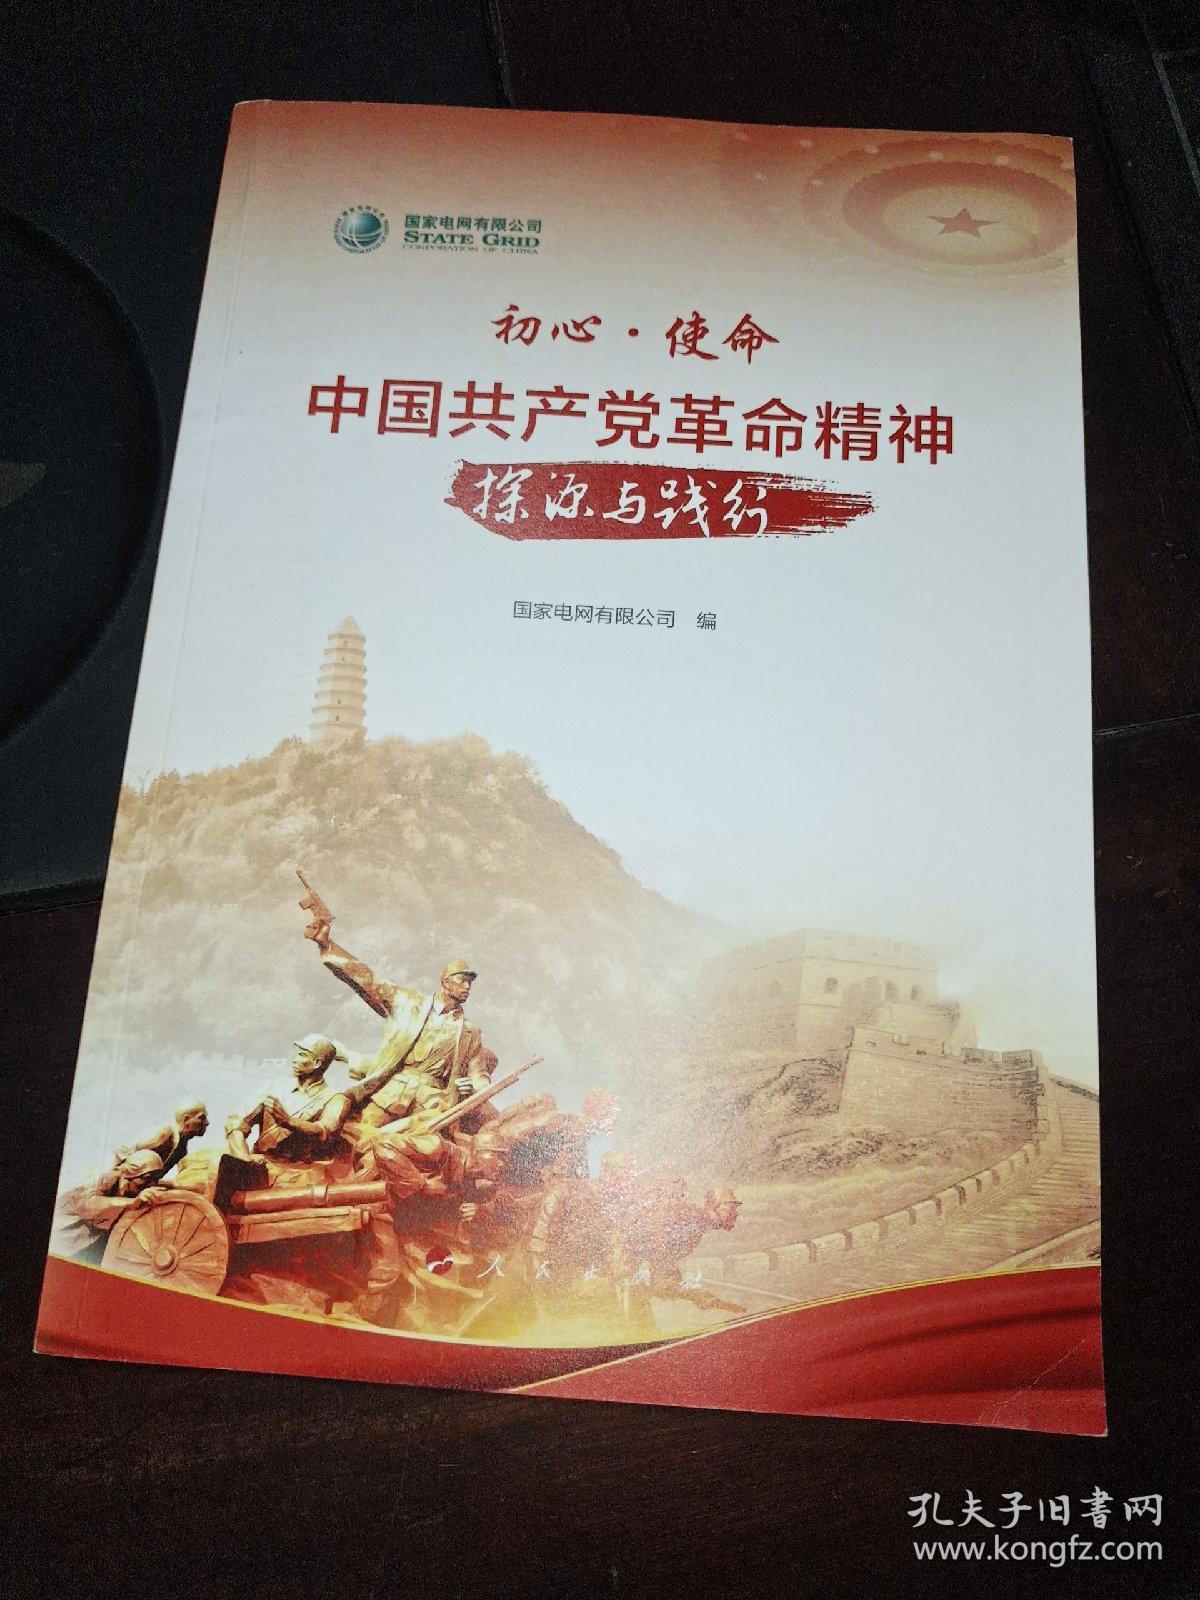 初心•使命 中国共产党革命精神探源与践行